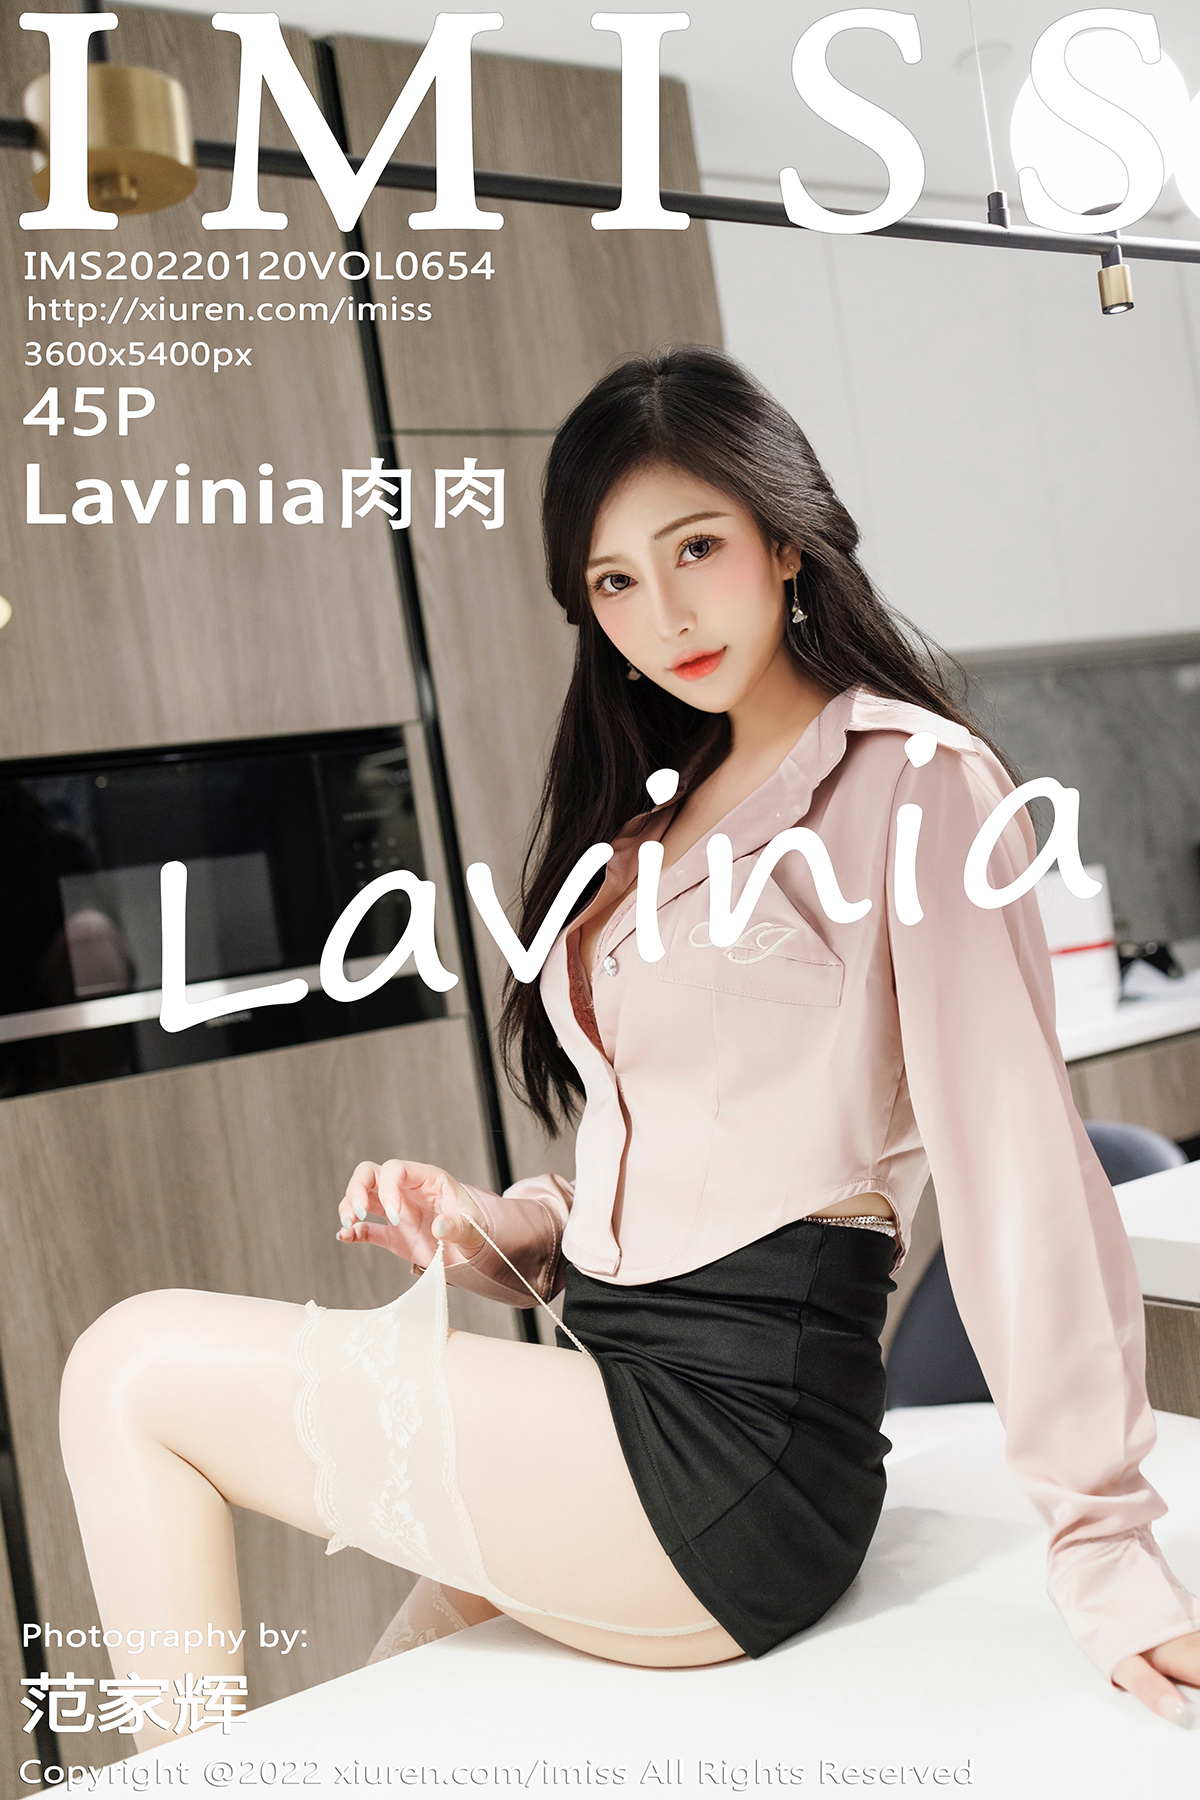 【IMISS愛蜜社】2022.01.20 Vol.654 Lavinia肉肉 完整版無水印寫真【45P】 - 貼圖 - 絲襪美腿 -